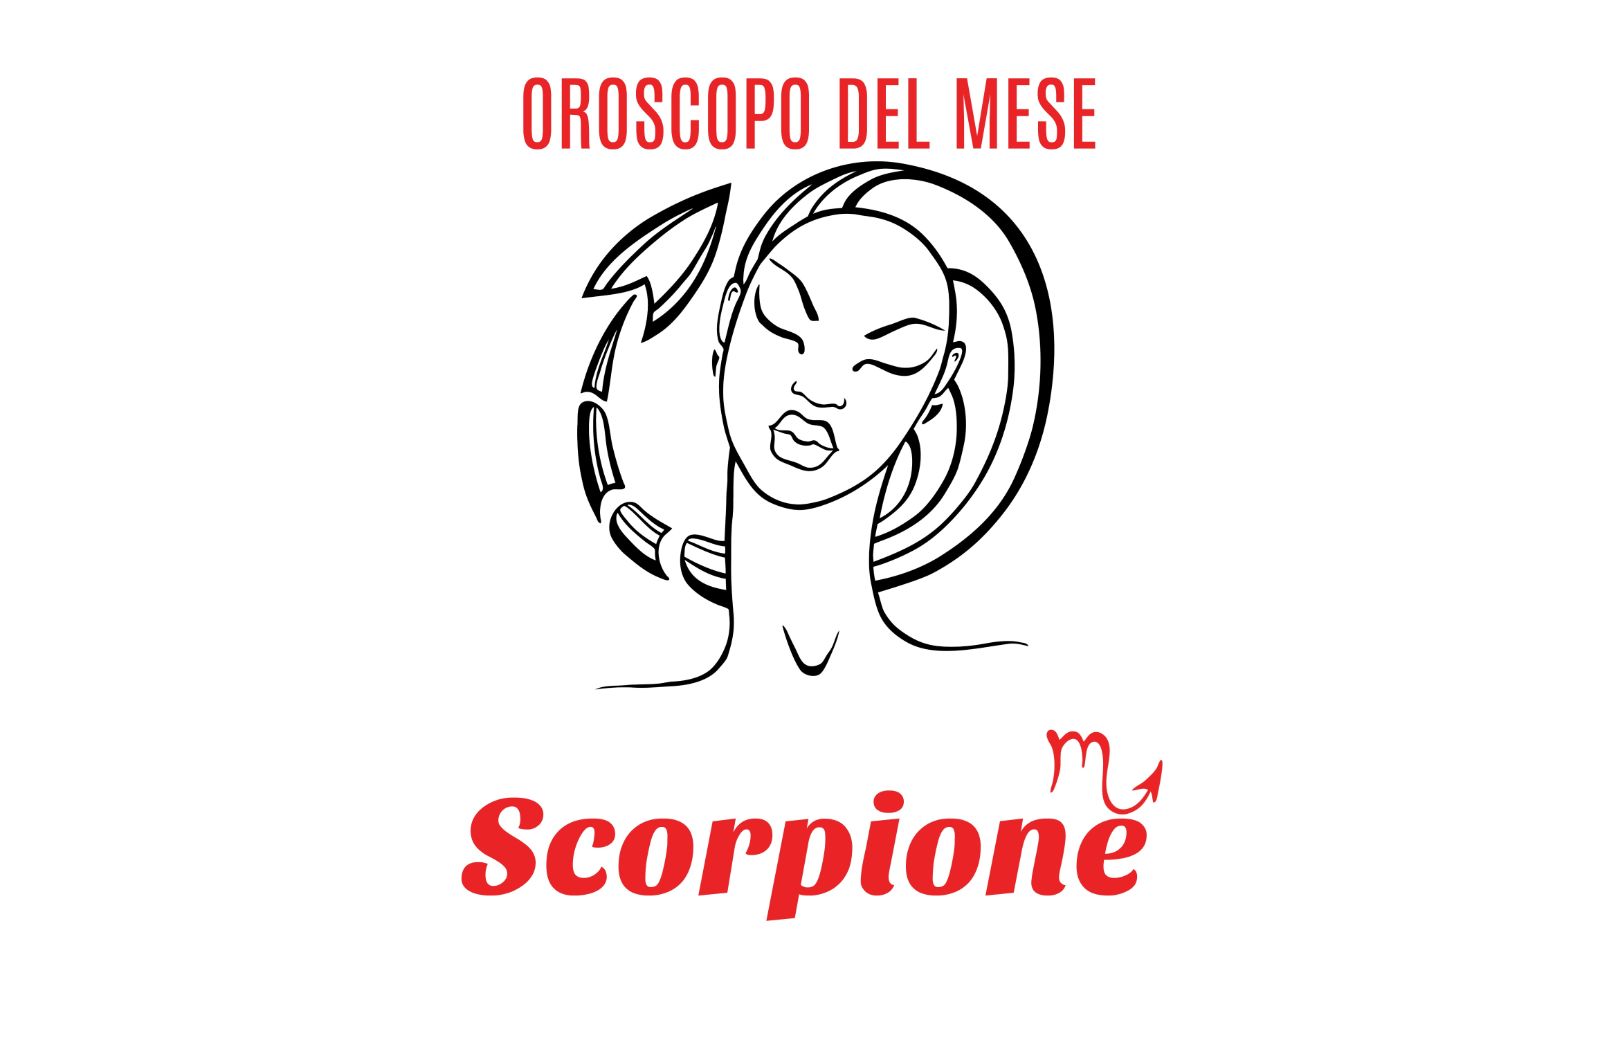 Oroscopo del mese: Scorpione - maggio 2018